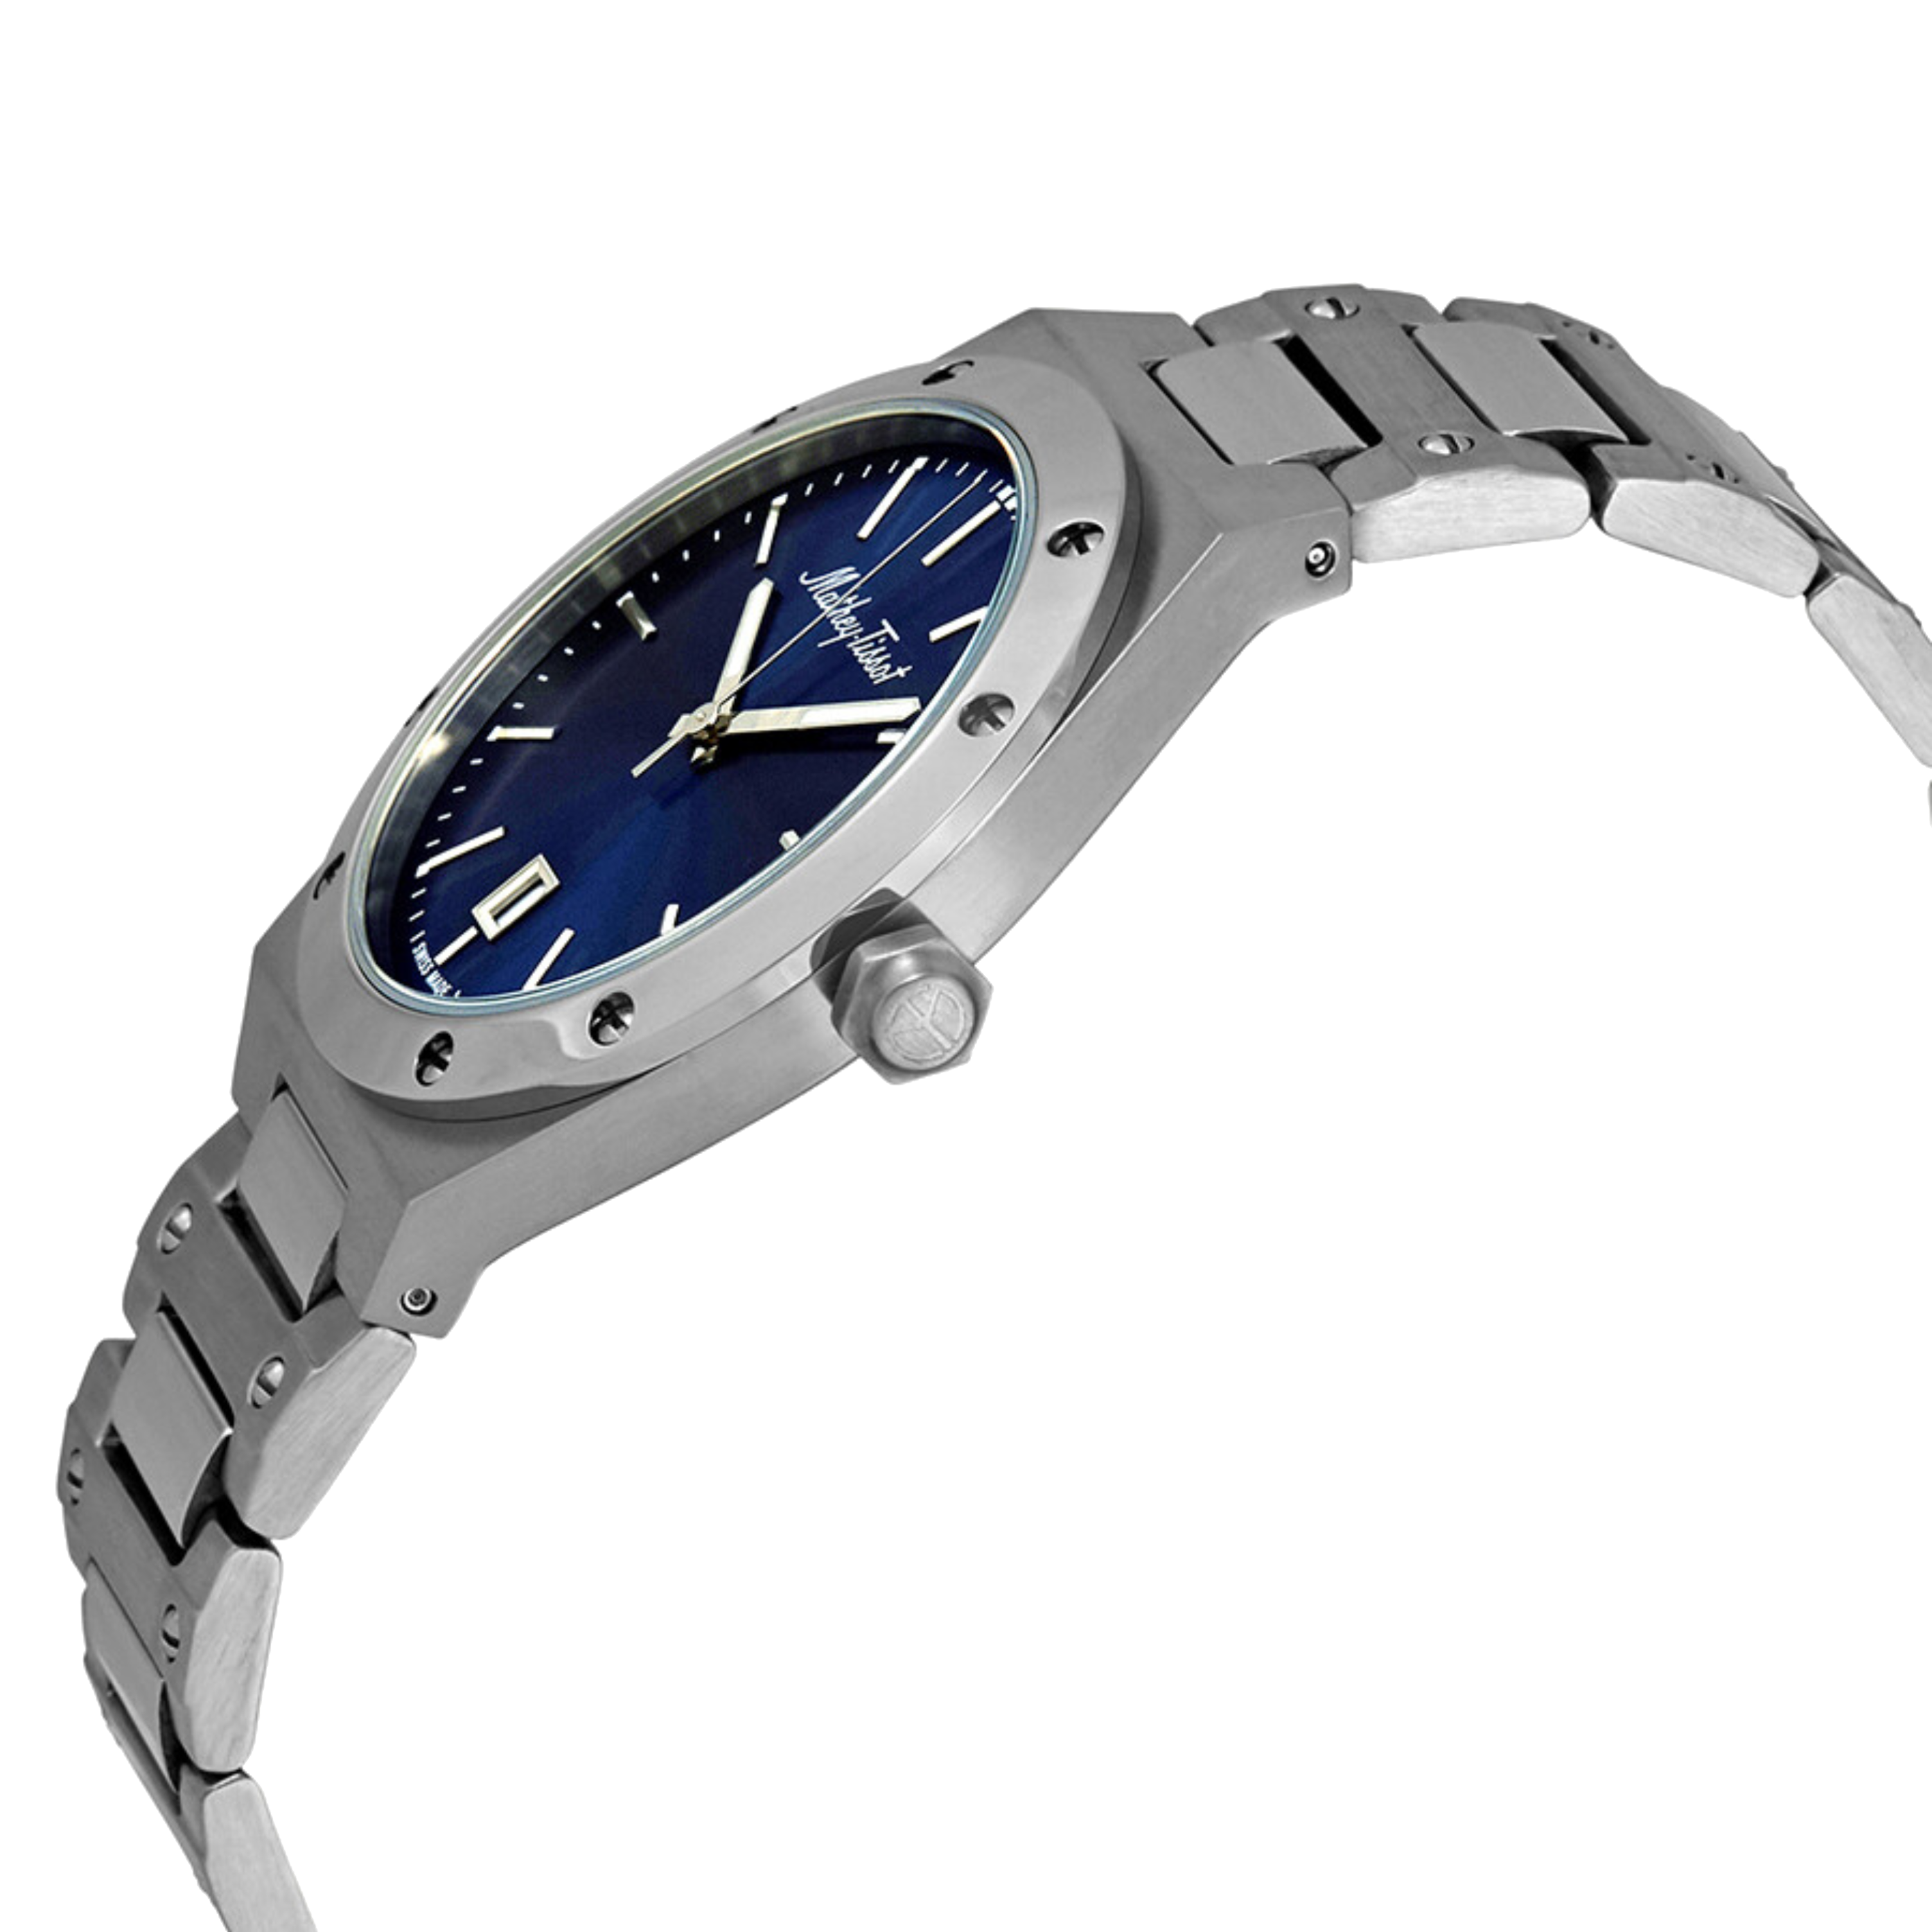 שעון יד לגבר Mathey Tissot H680ABU 41mm צבע כסף/כחול/זכוכית ספיר - אחריות לשנתיים